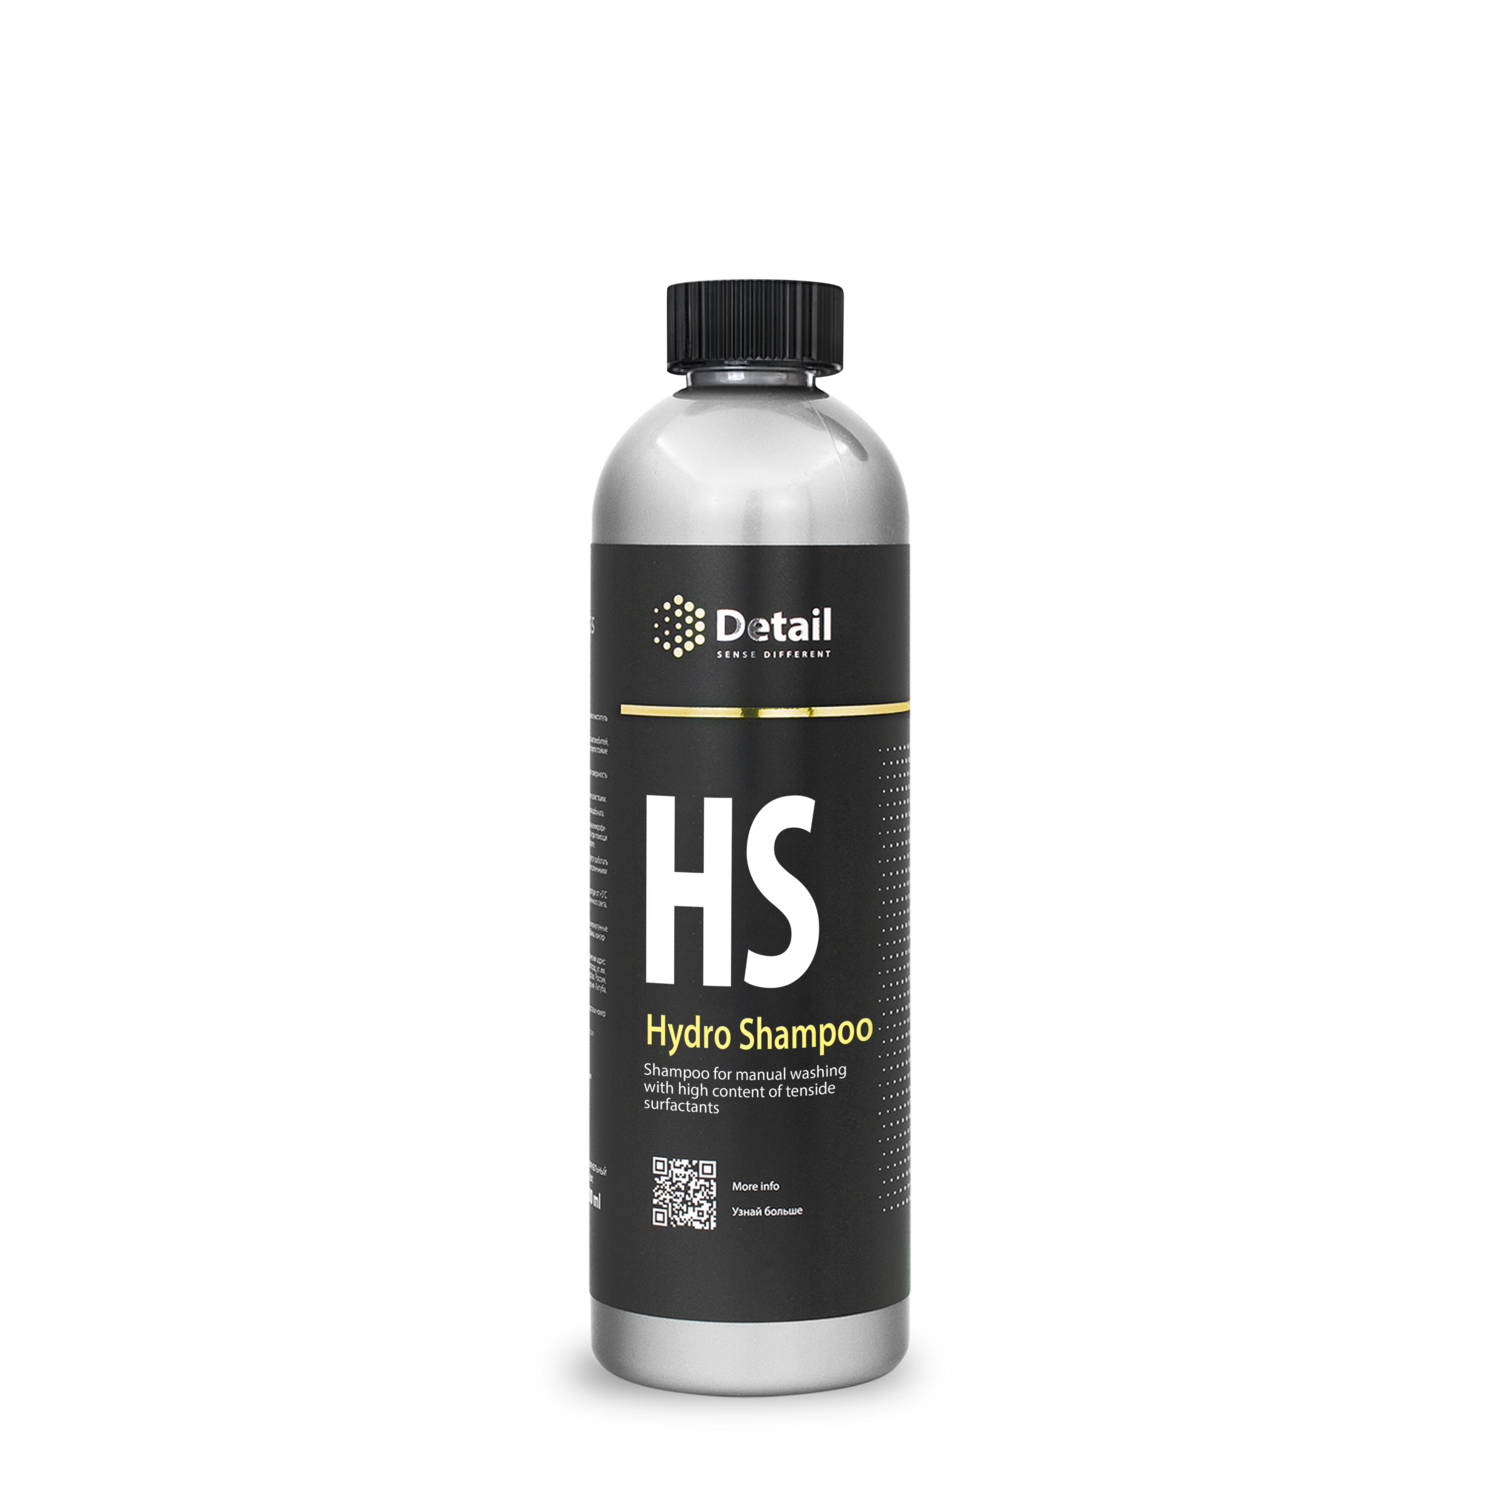 Шампунь вторая фаза с гидрофобным эффектом HS (Hydro Shampoo), 500 мл